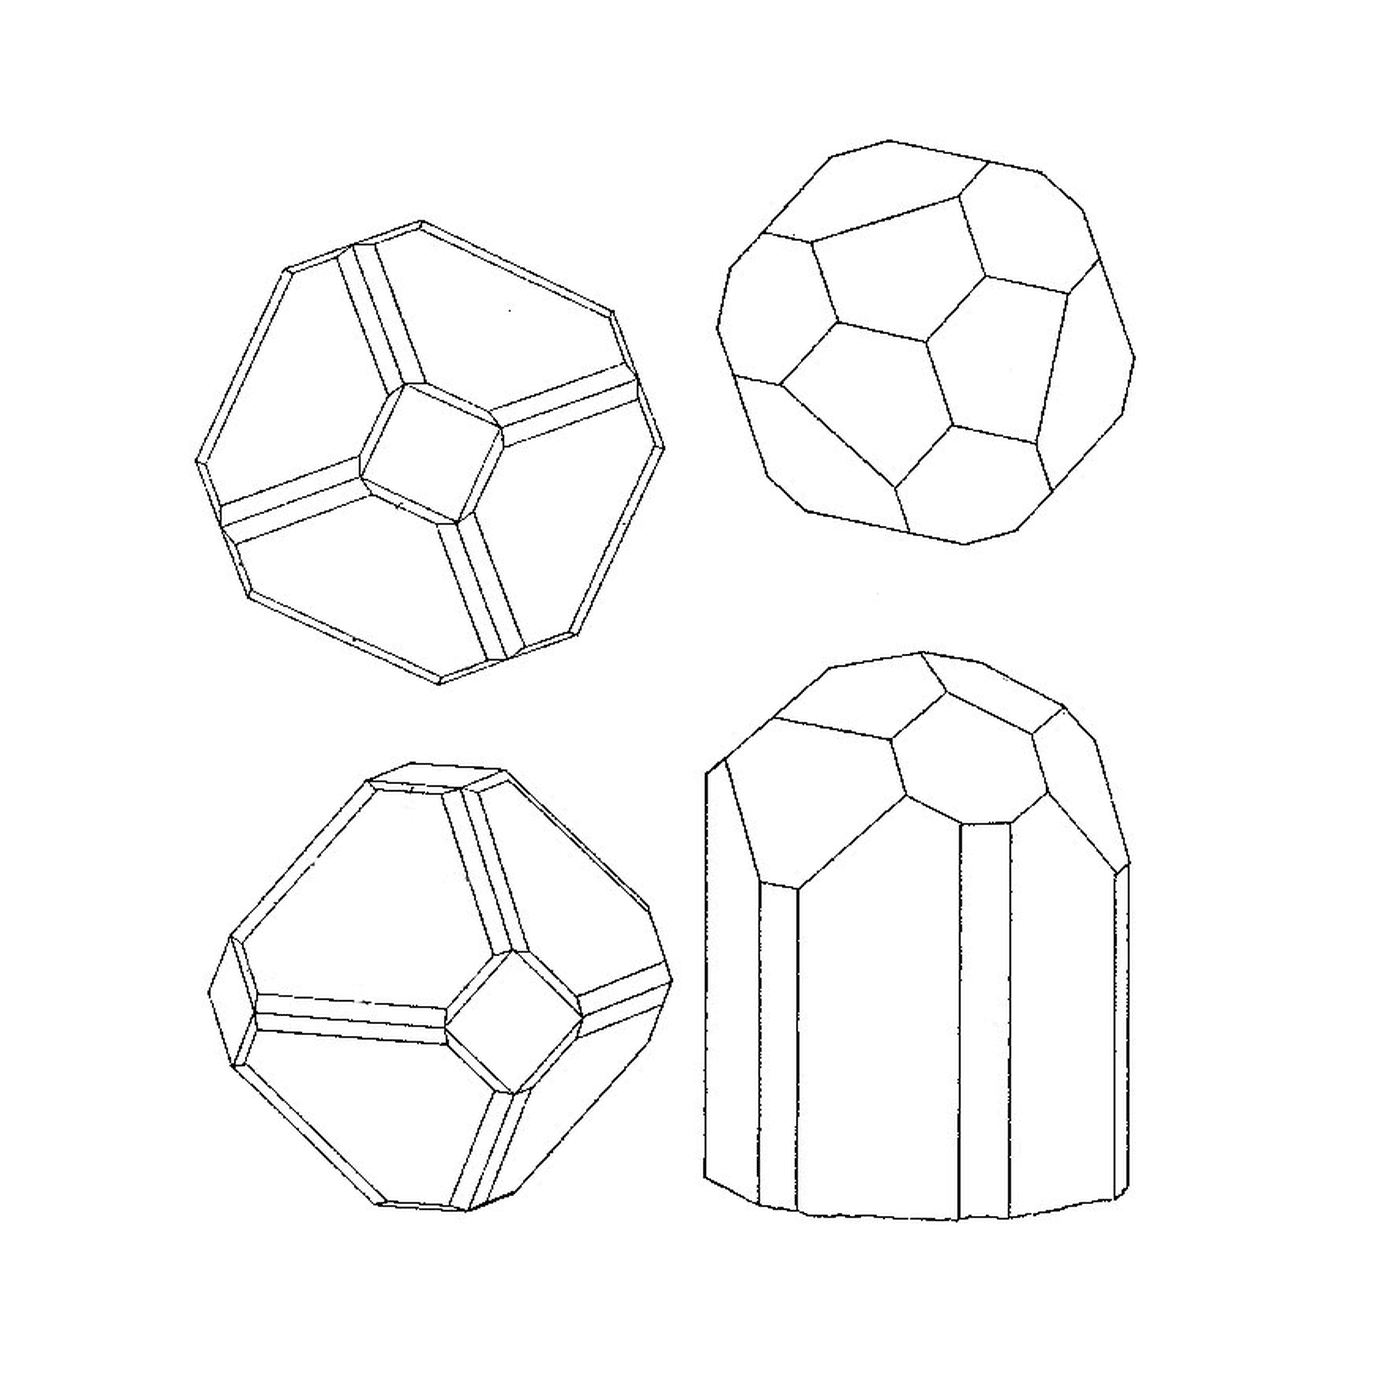  Quatro formas geométricas diferentes 